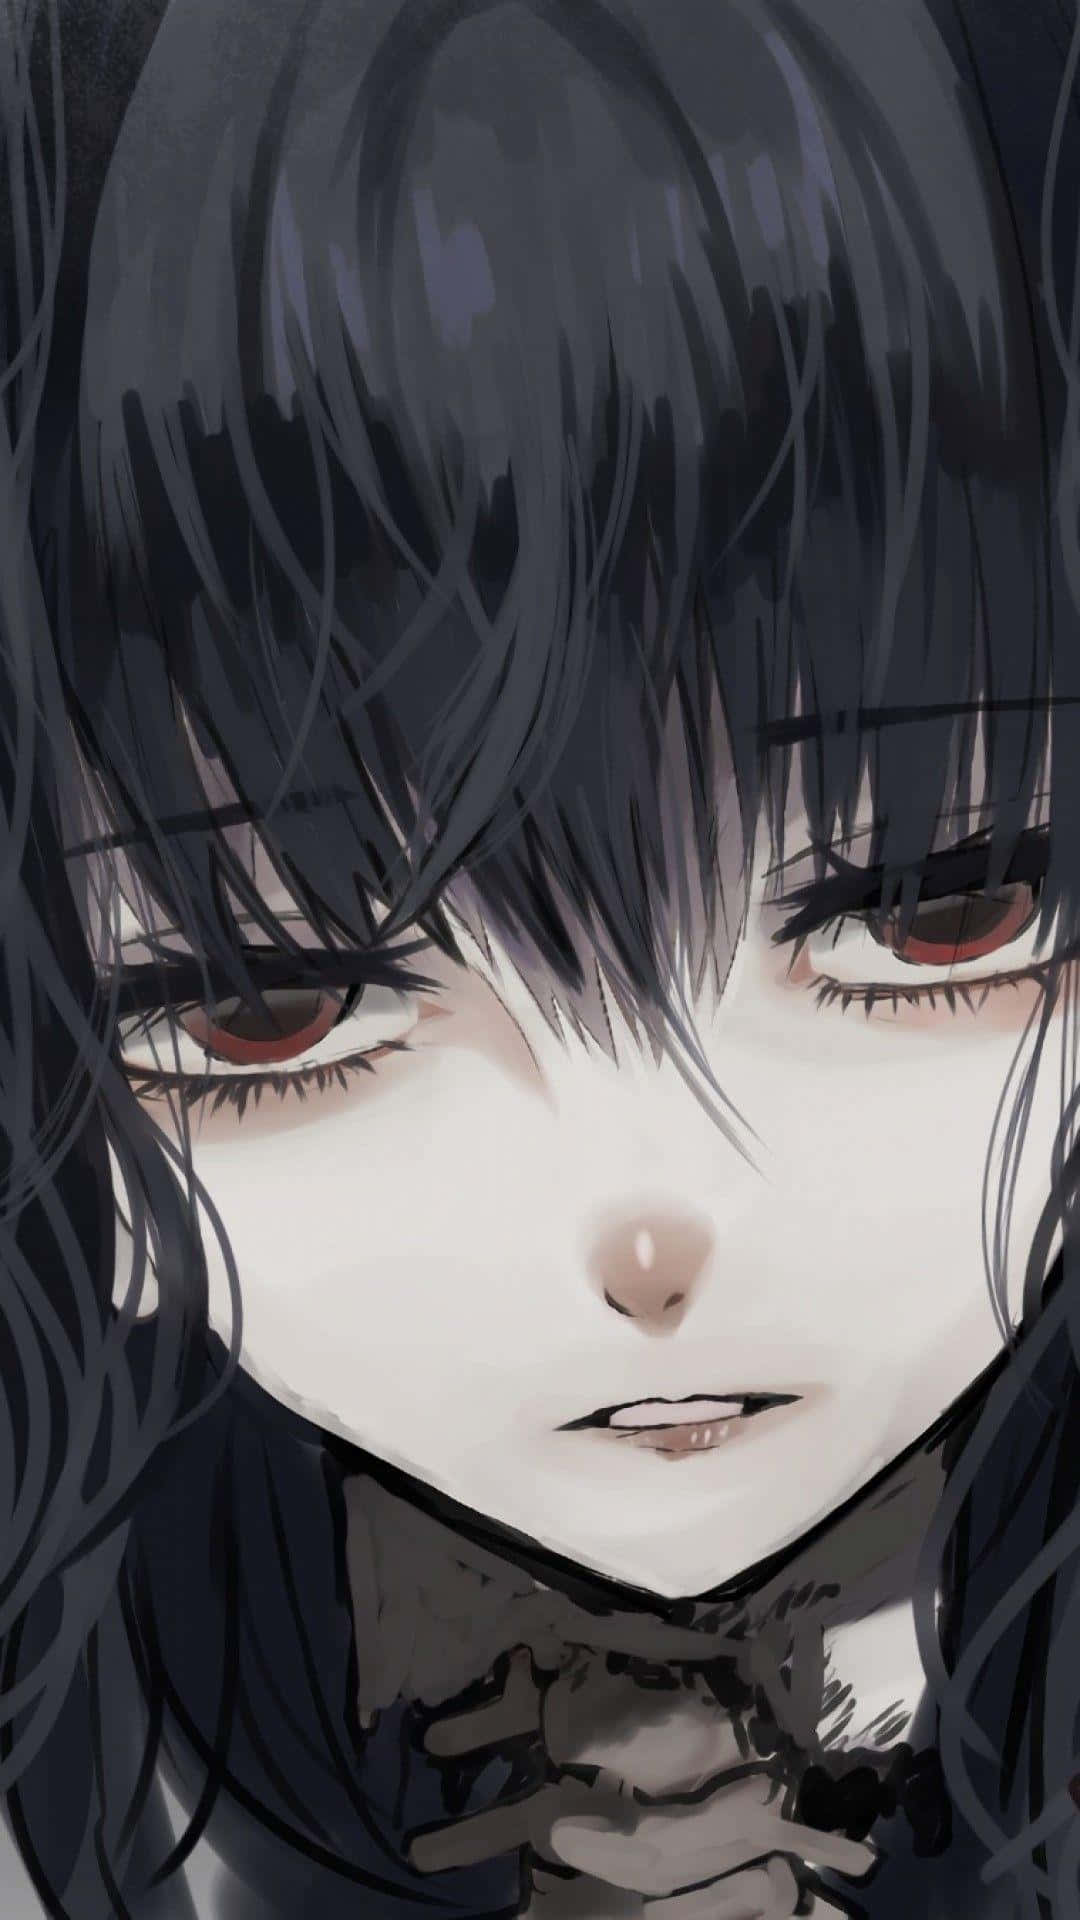 Sad Depressing Anime Gothic Emo Girl